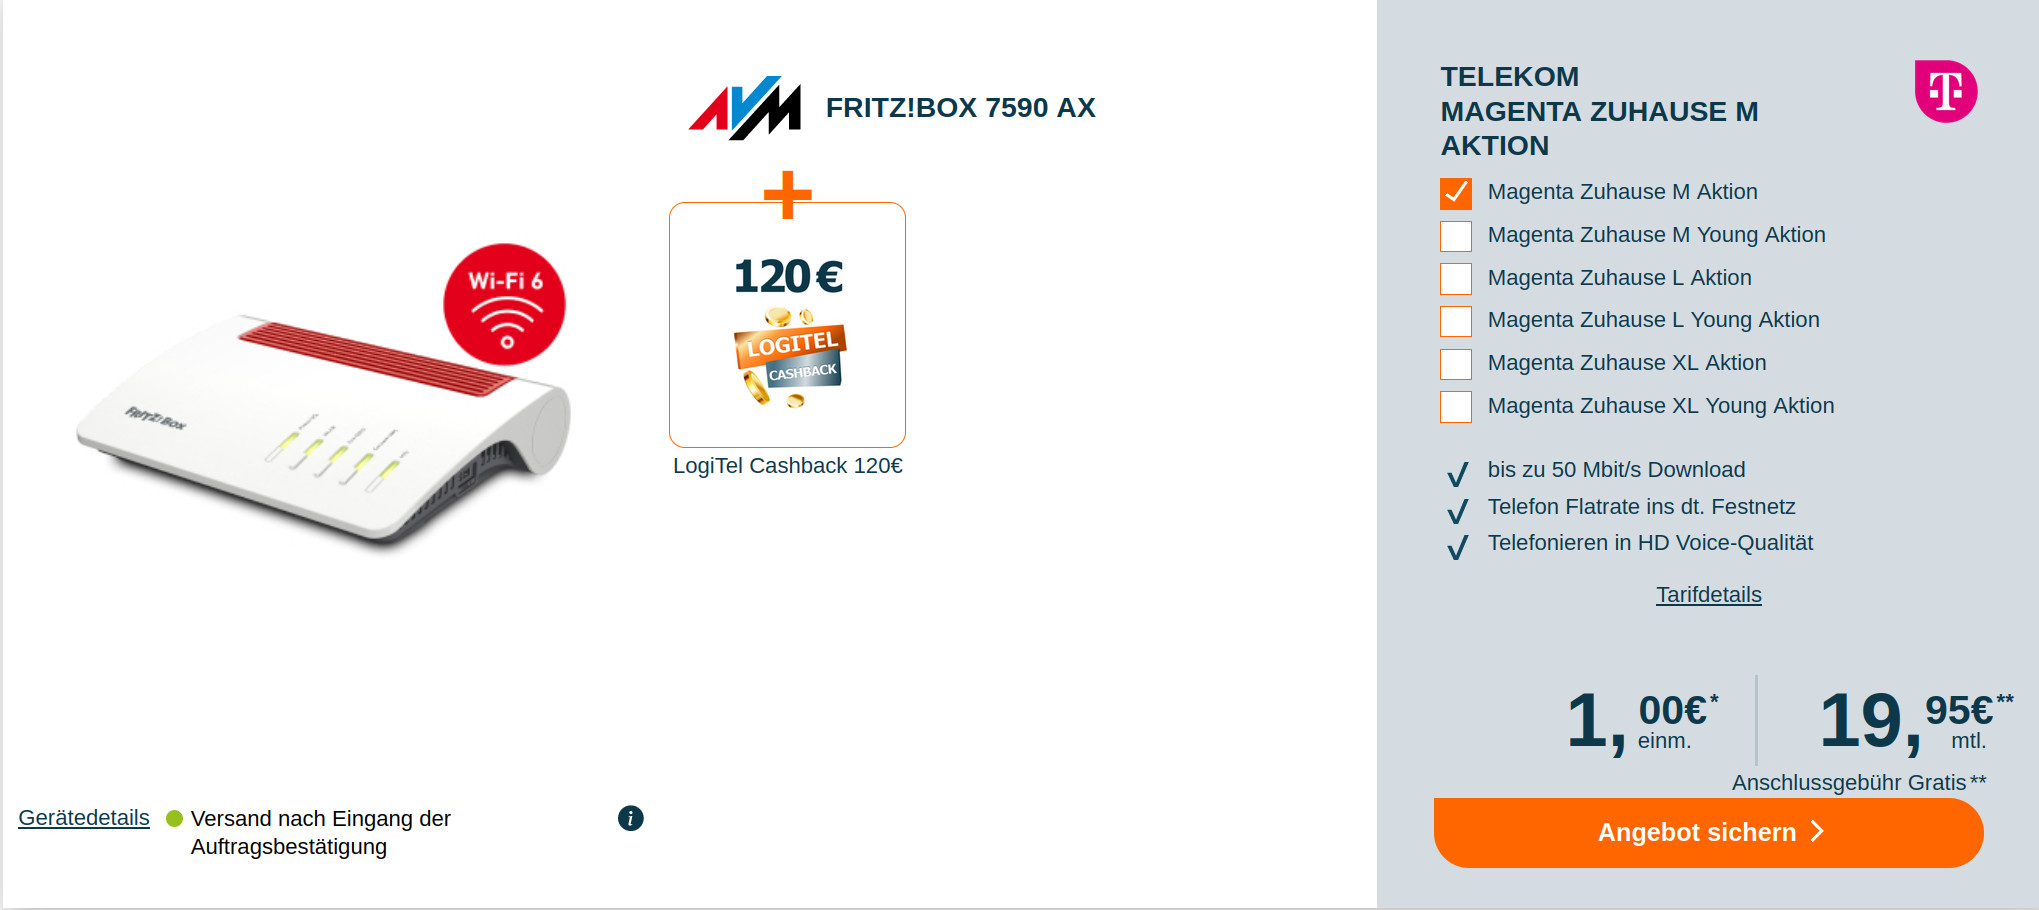 Spartipp Telekom Magenta Zuhause: 100 Euro Cashback plus Fritzbox 7590 AX mit Magenta Tarif für mtl. 19,95 Euro